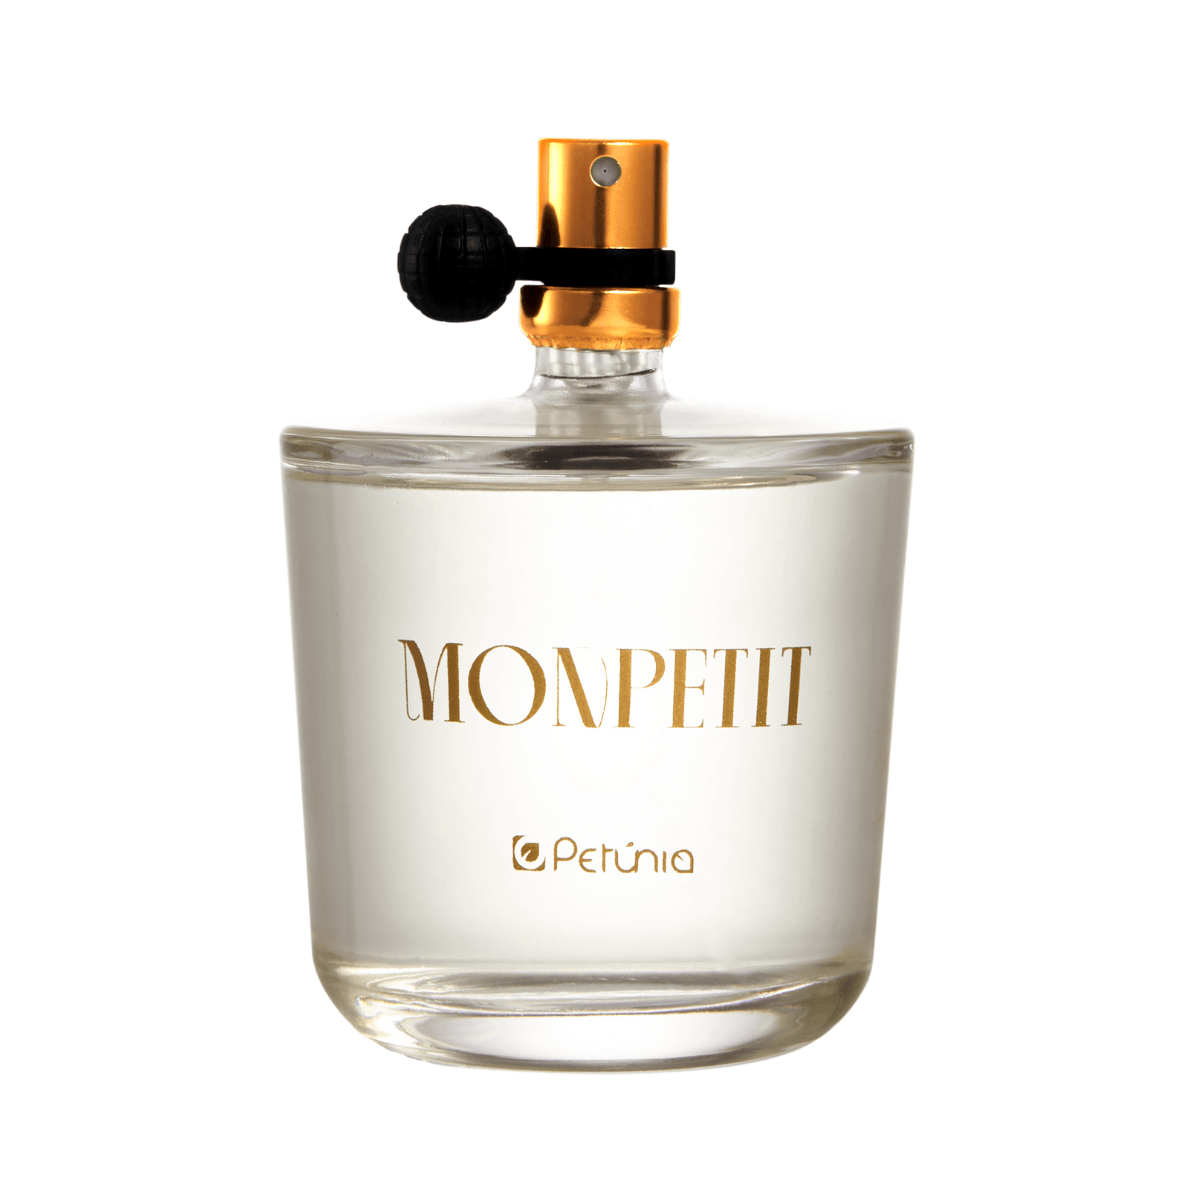 Perfume--Feminino-Eau-De-Toilette-Monpetit-100Ml---Petunia-YEN-1.42013.0